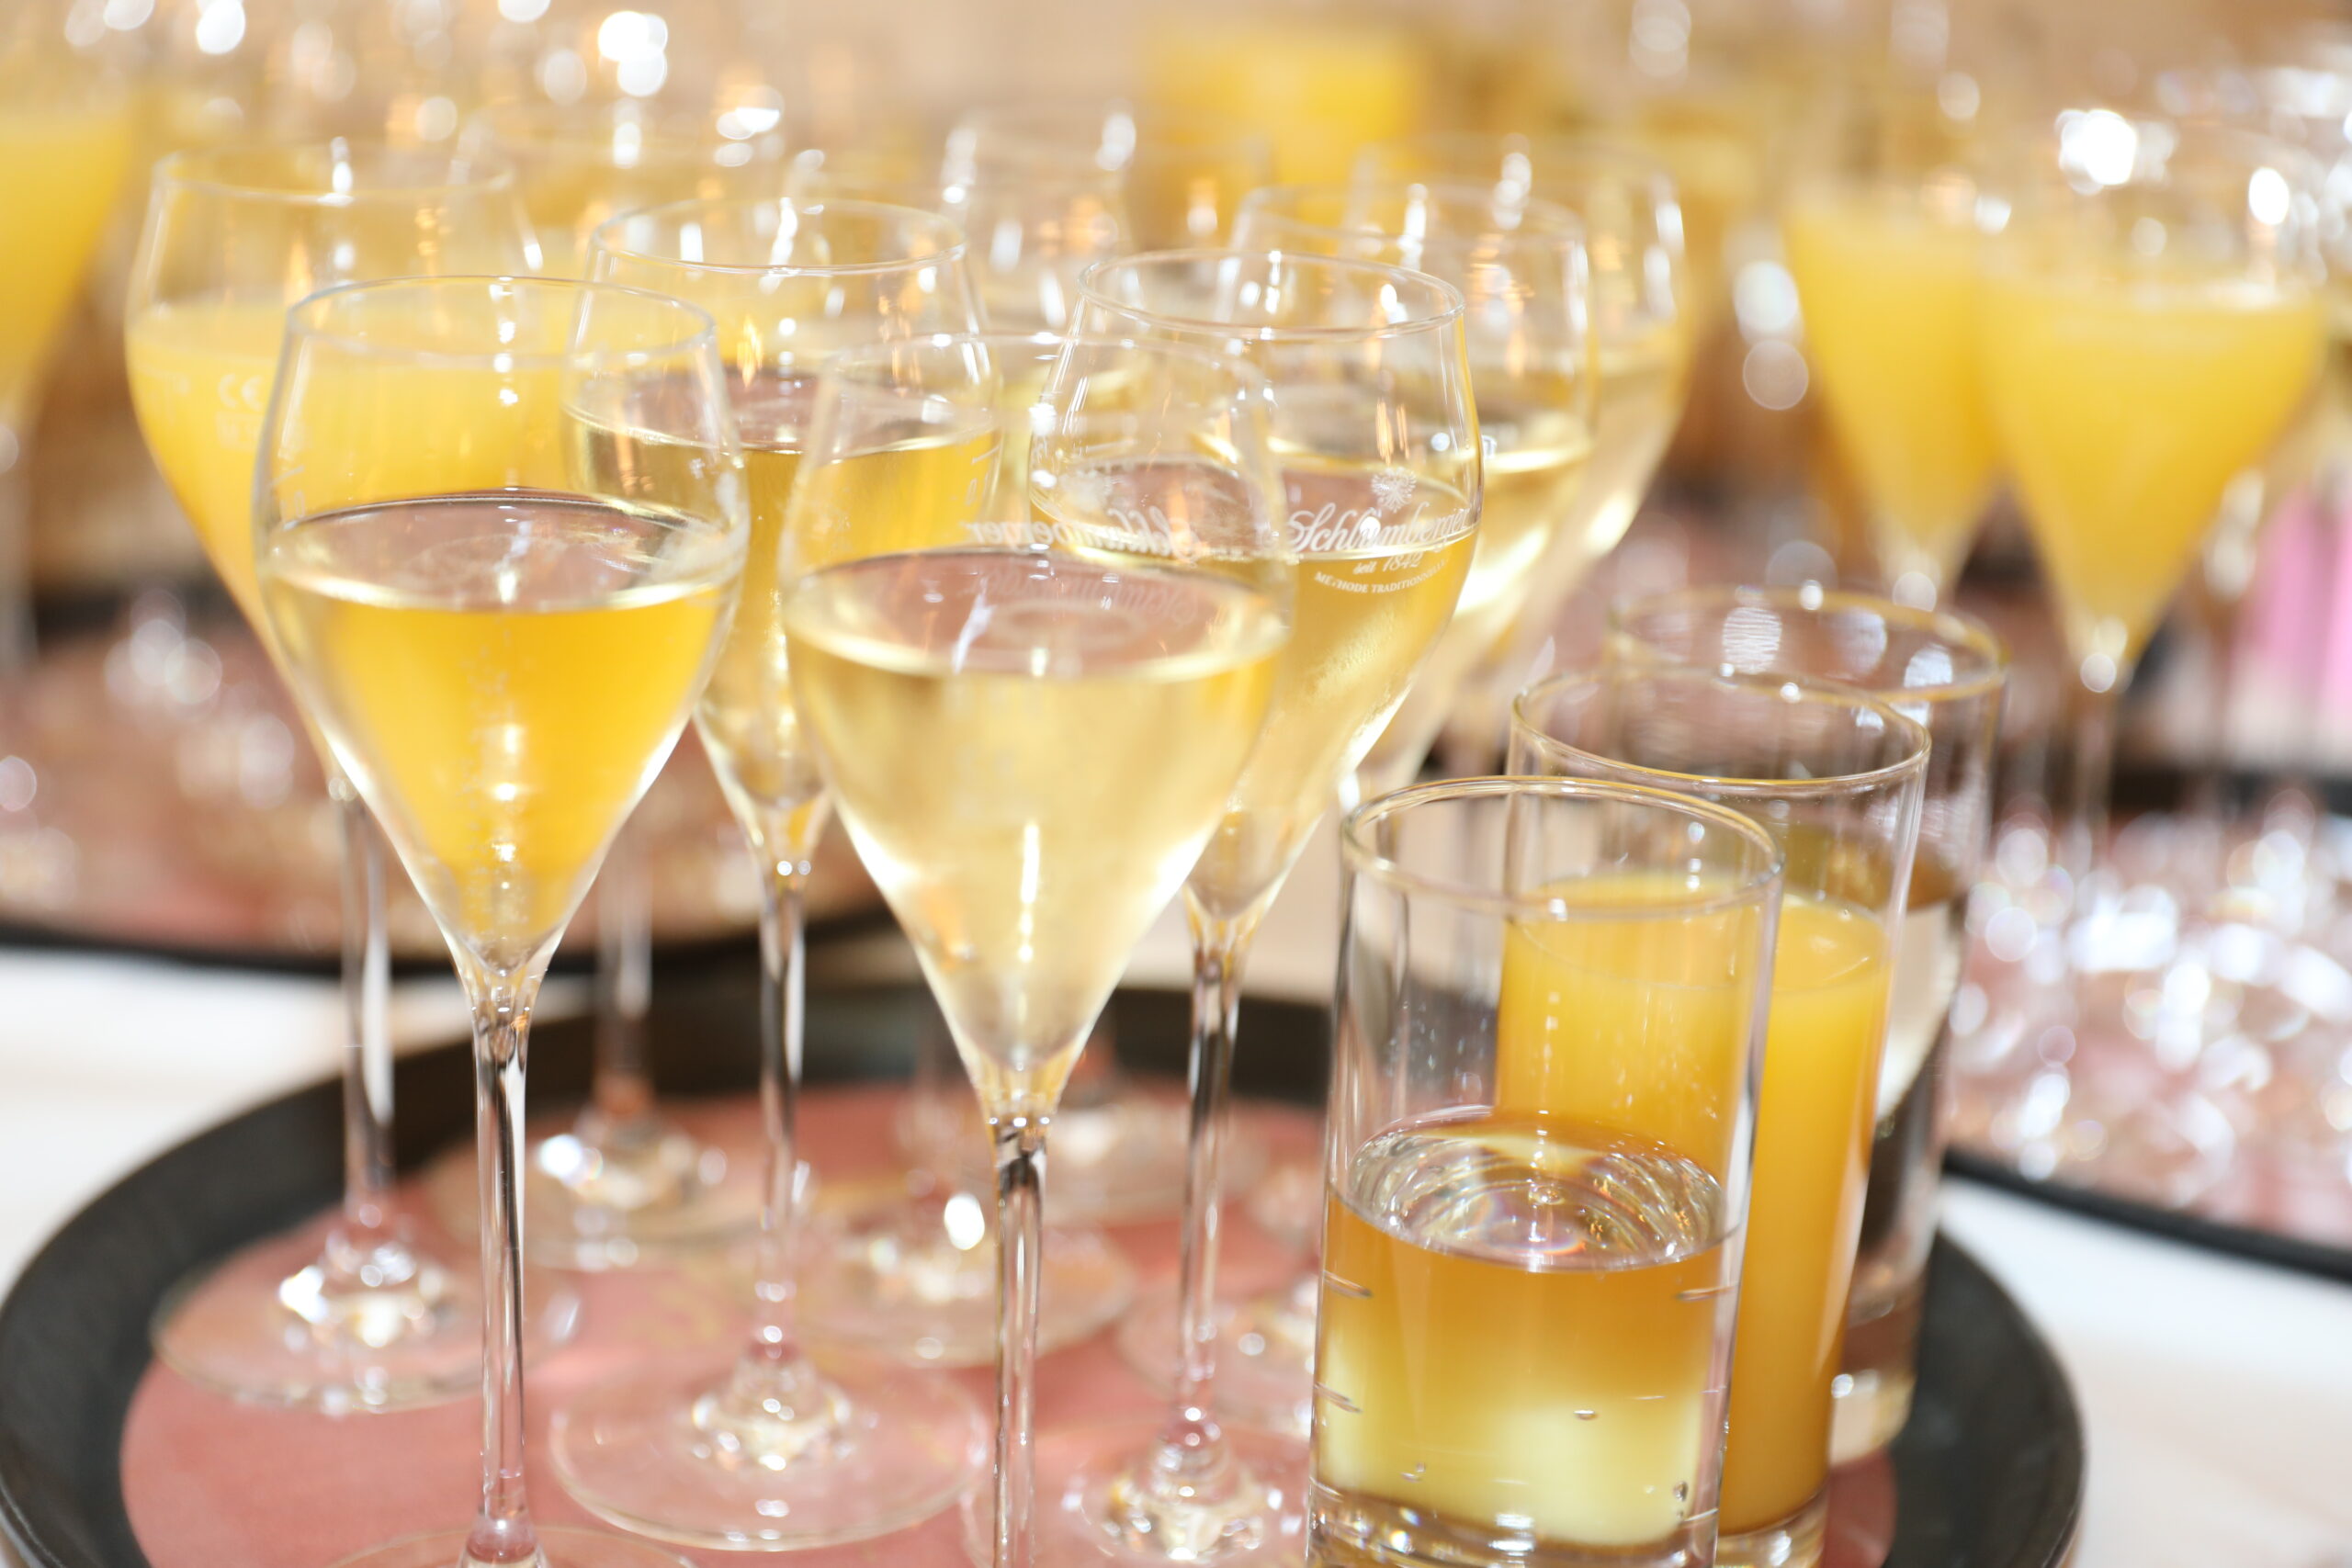 Tisch mit Sektgläsern gefüllt mit gelblicher Flüssigkeit und Gläsern mit orangefarbenem Getränk